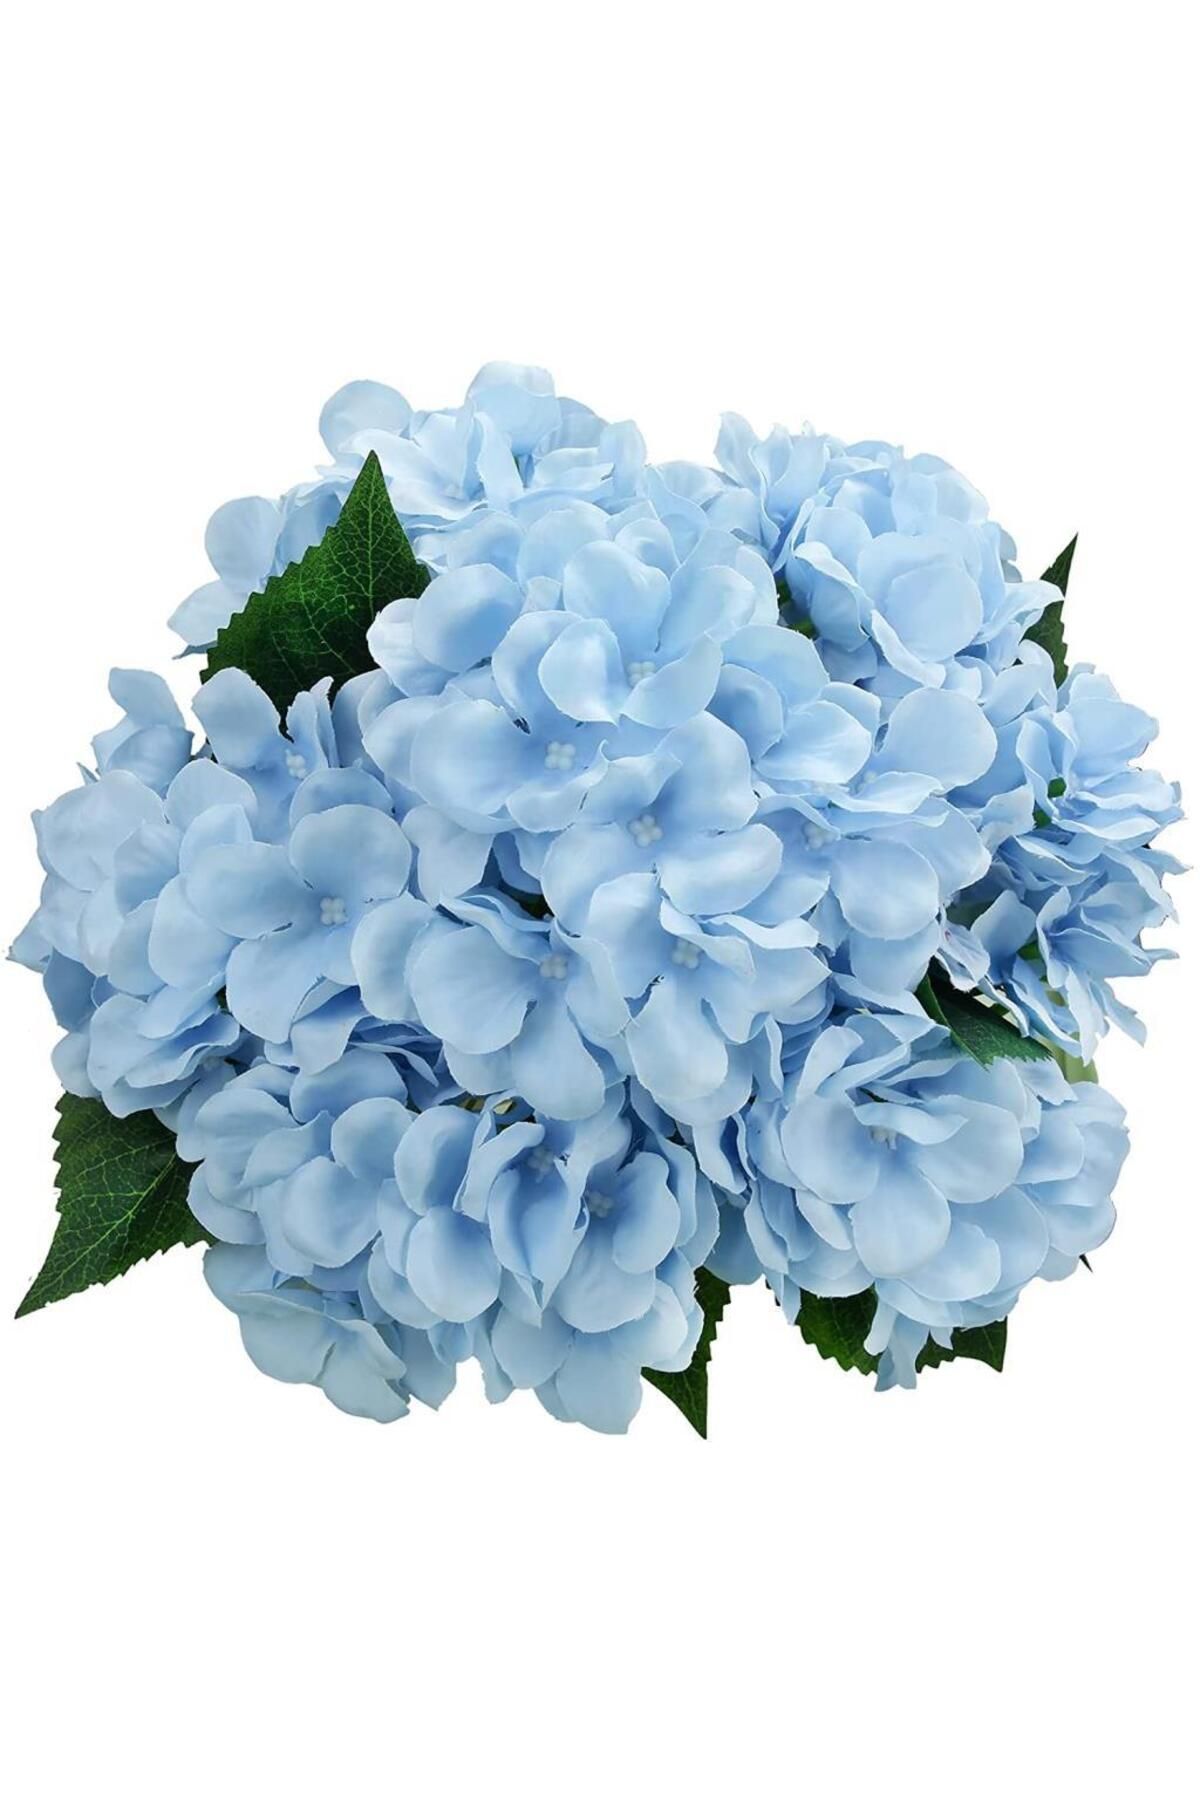 Nettenevime Yapay Çiçek Ortanca Çiçeği Demeti 43 Cm Mavi Açık